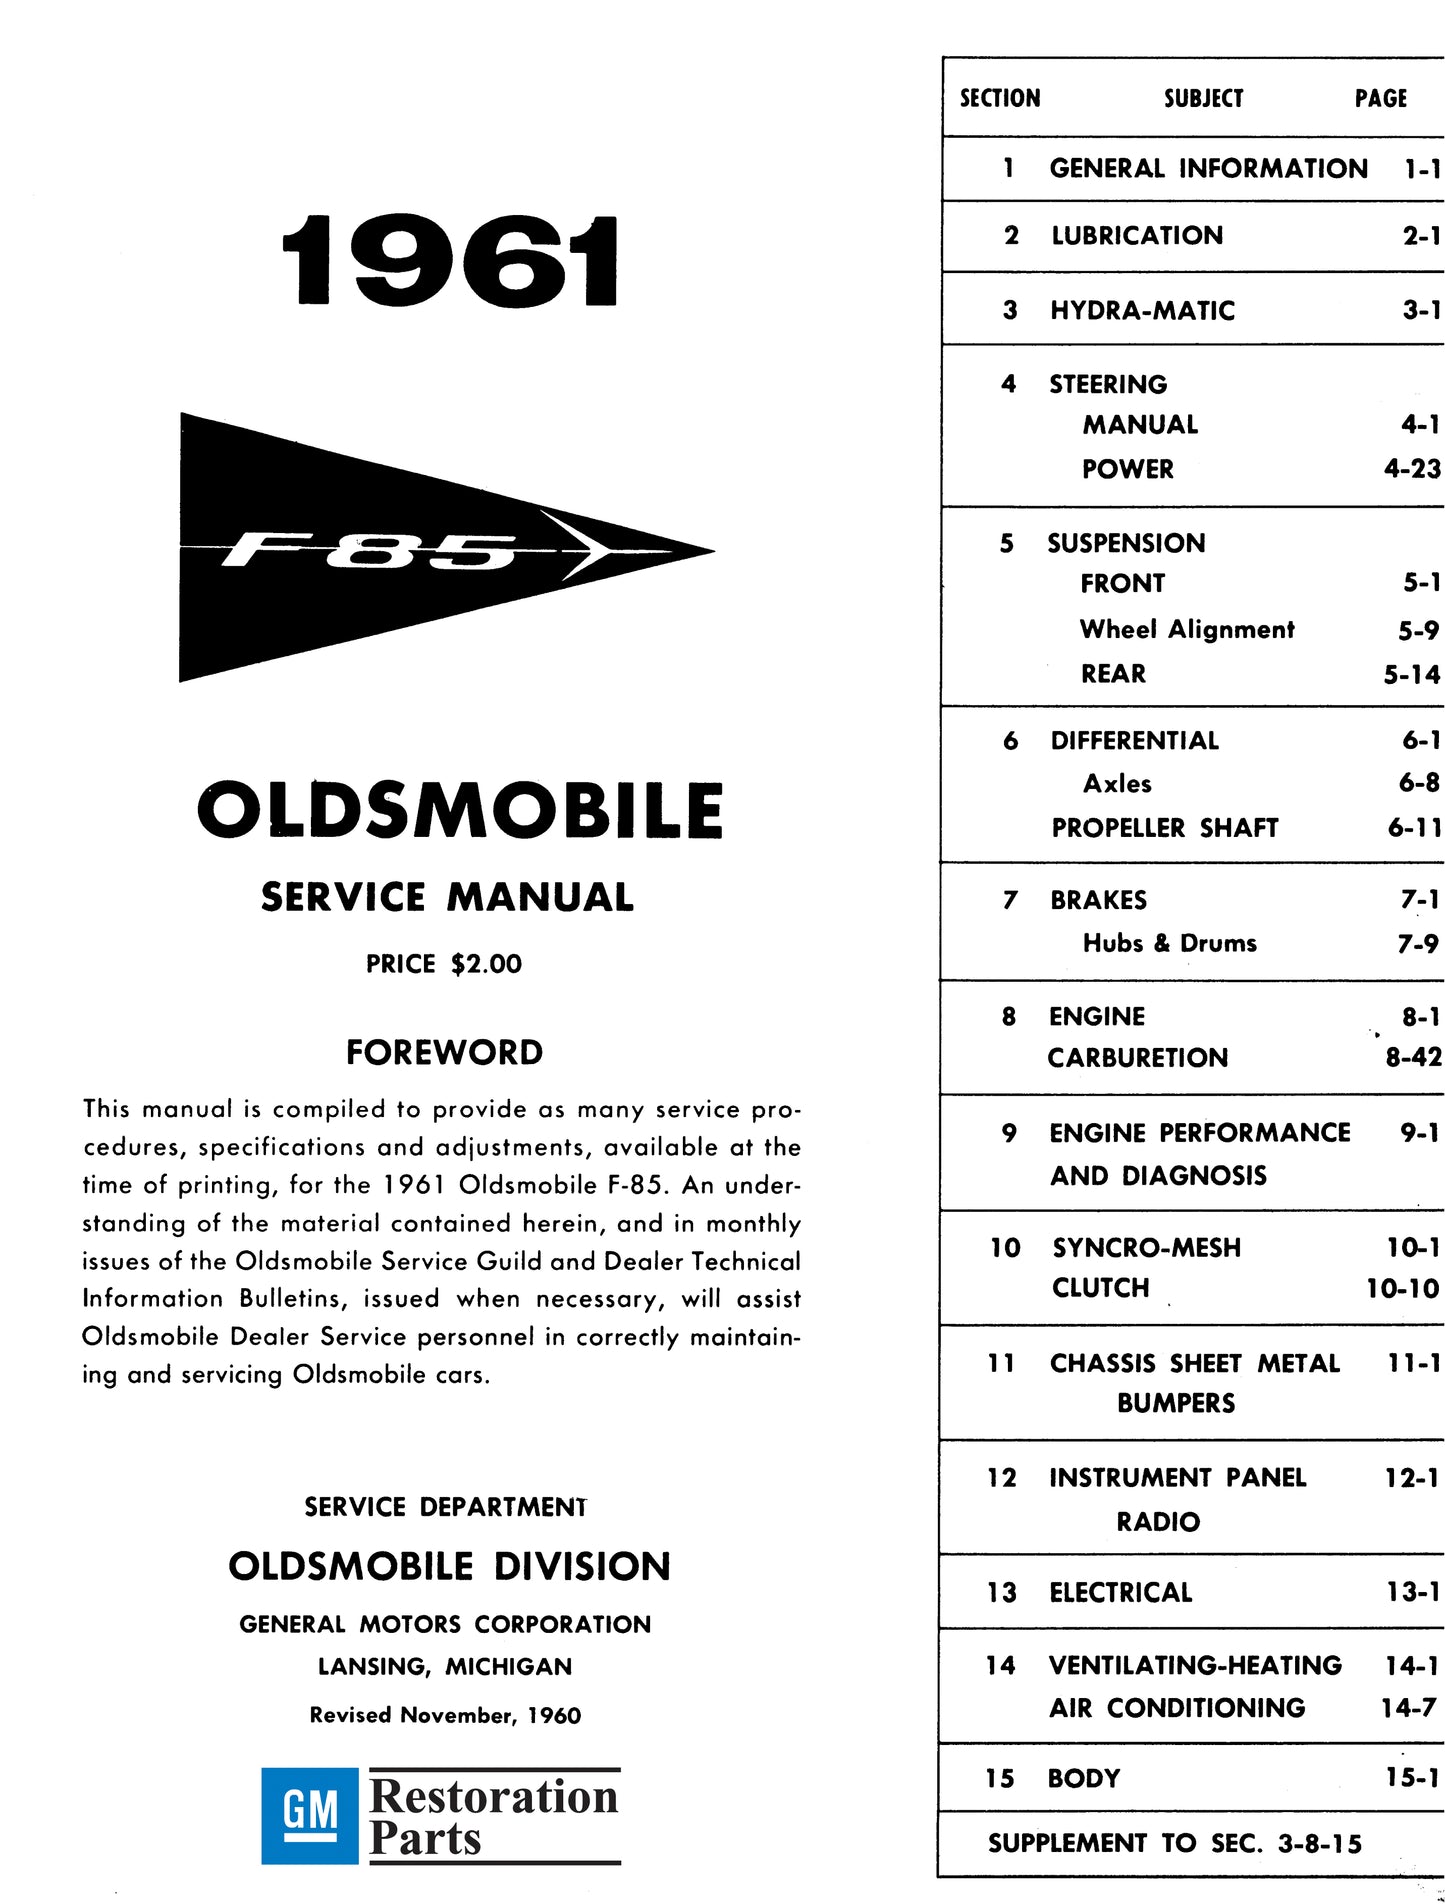 1961-1962 Oldsmobile Shop Manual - All Models